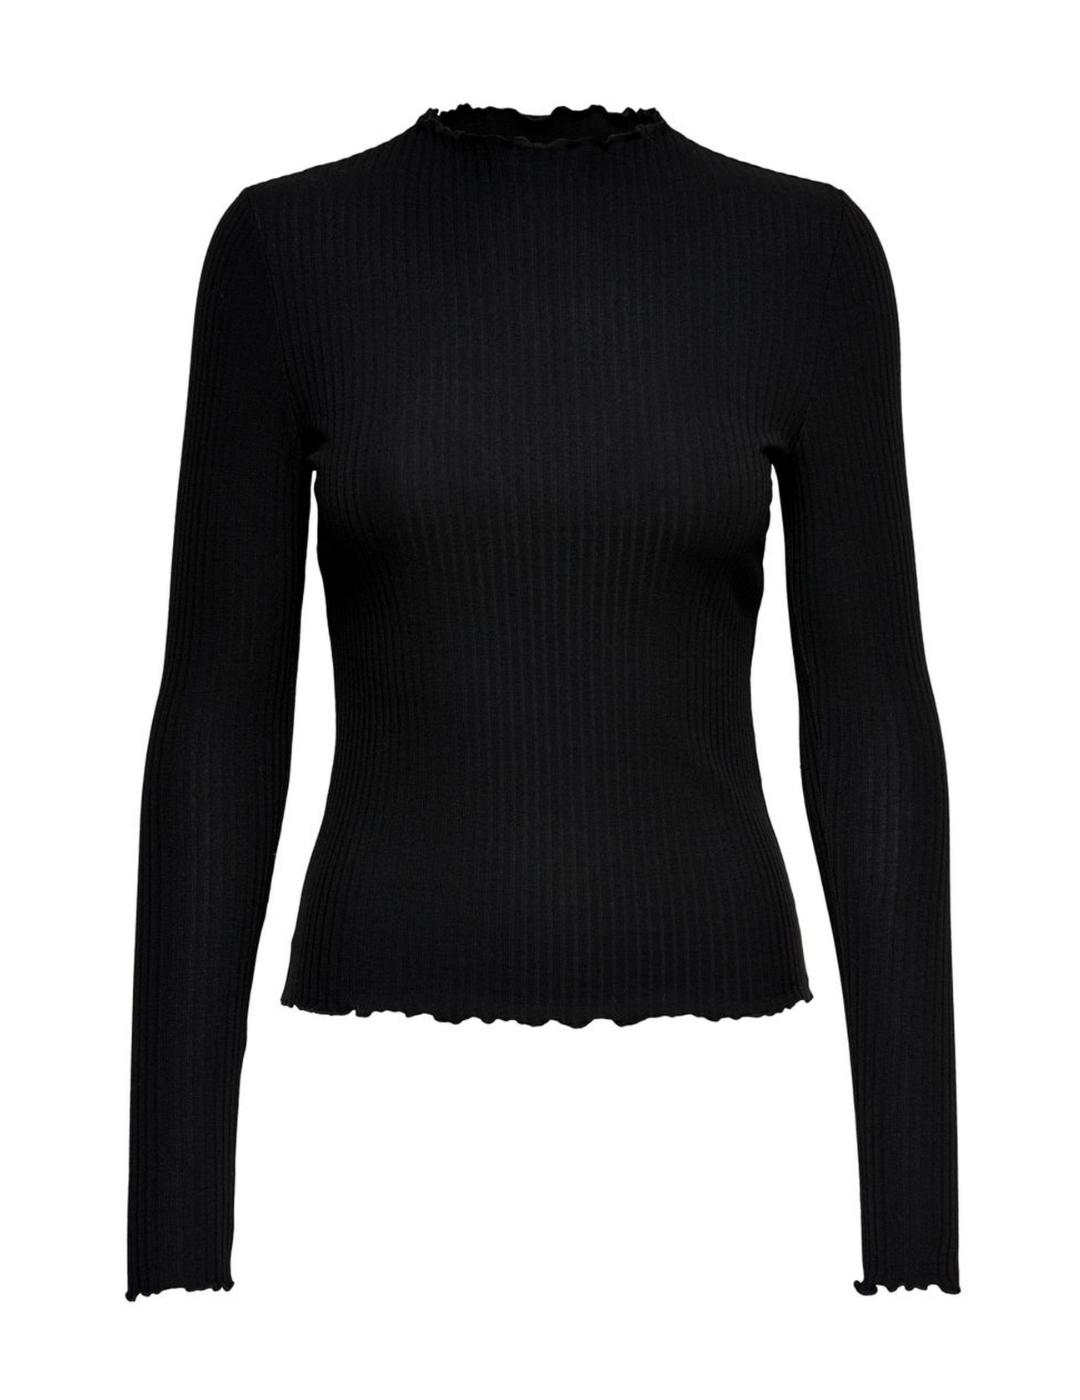 Camiseta Only Emma de canalé negra manga larga para mujer